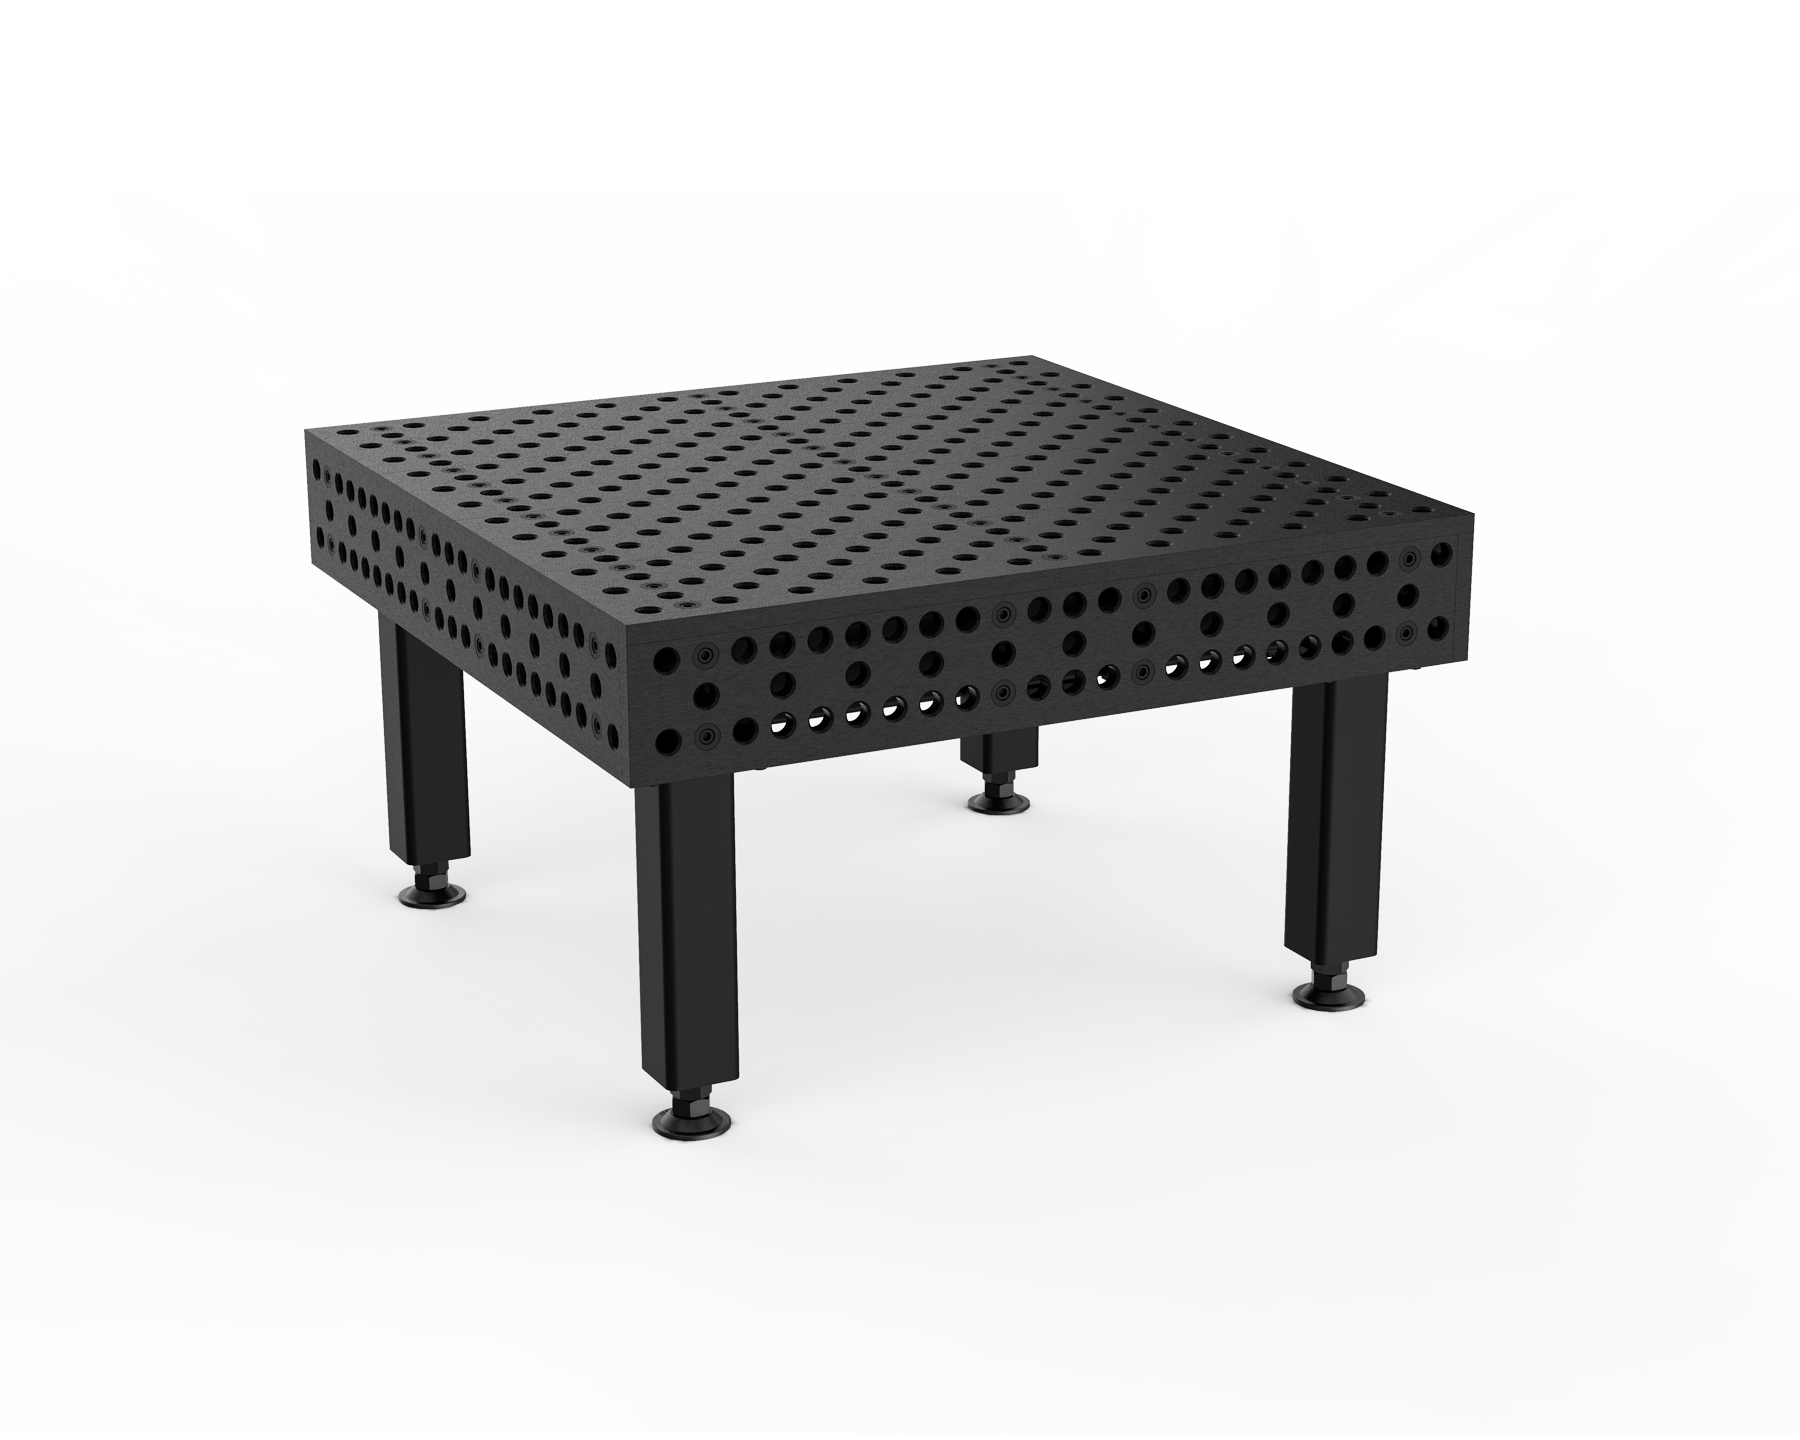 1.5 x 1.0 M Alpha 28 Table